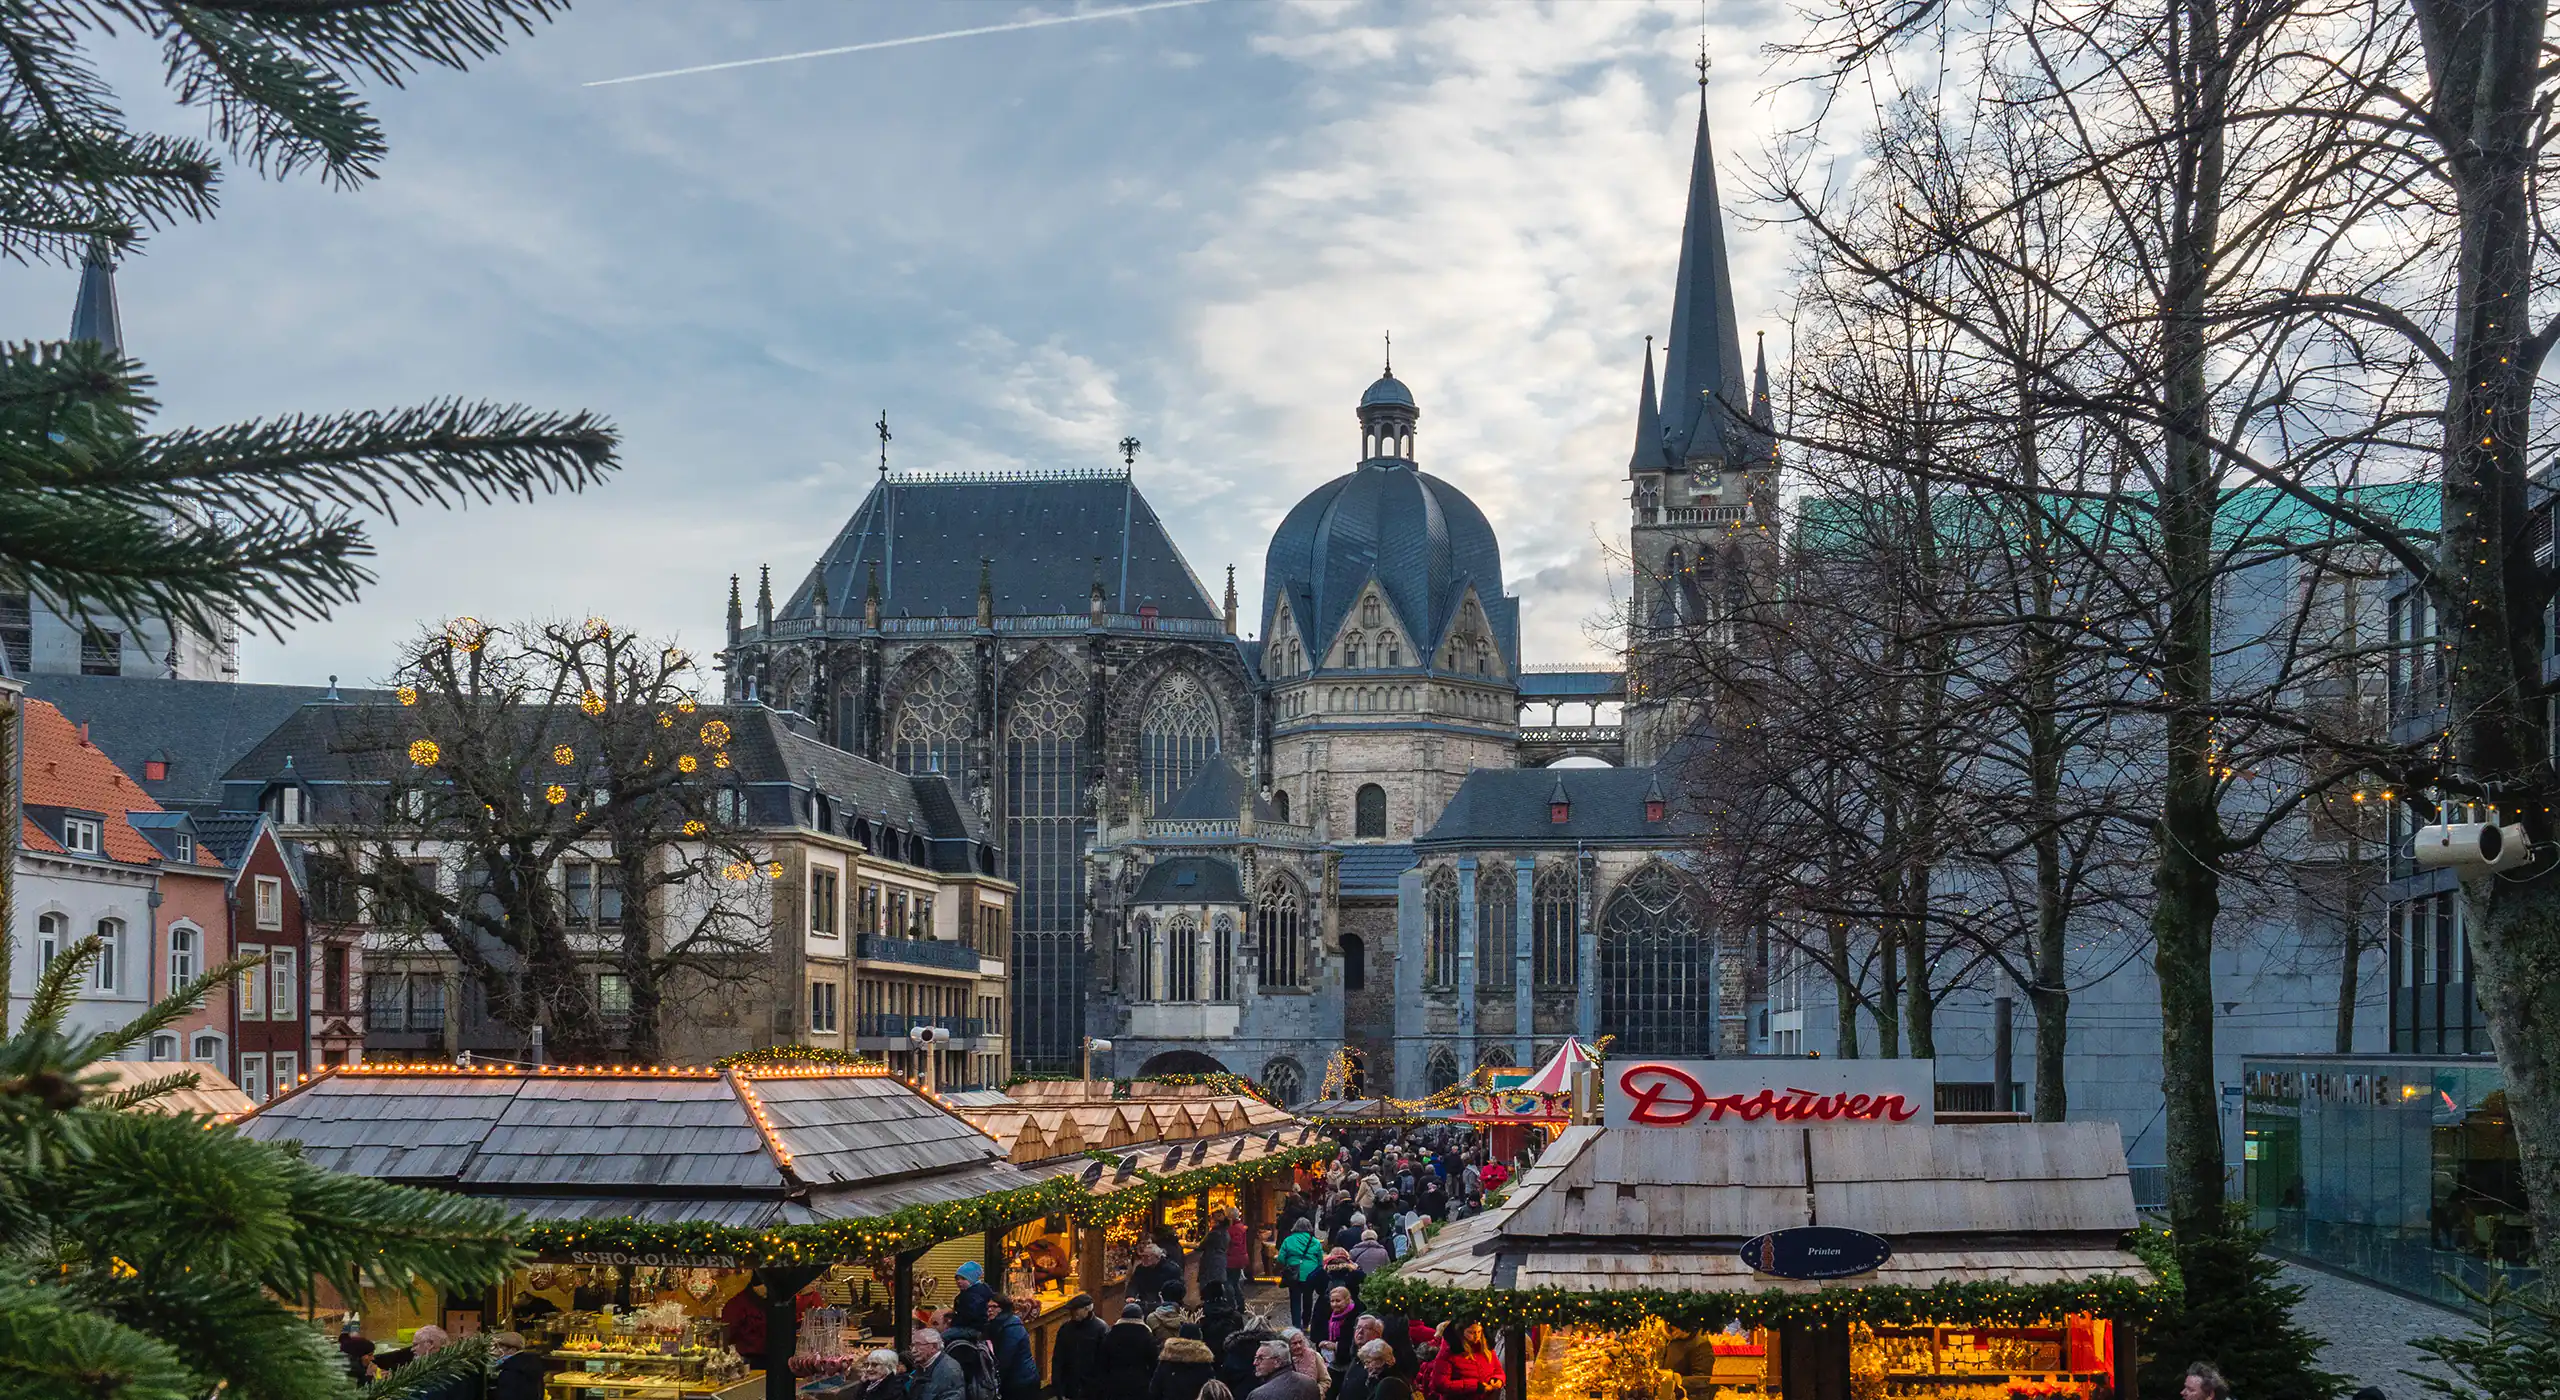 Aachener Weihnachtsmarkt auf dem der Aachener Dom im Hintergrund zu erkennen ist